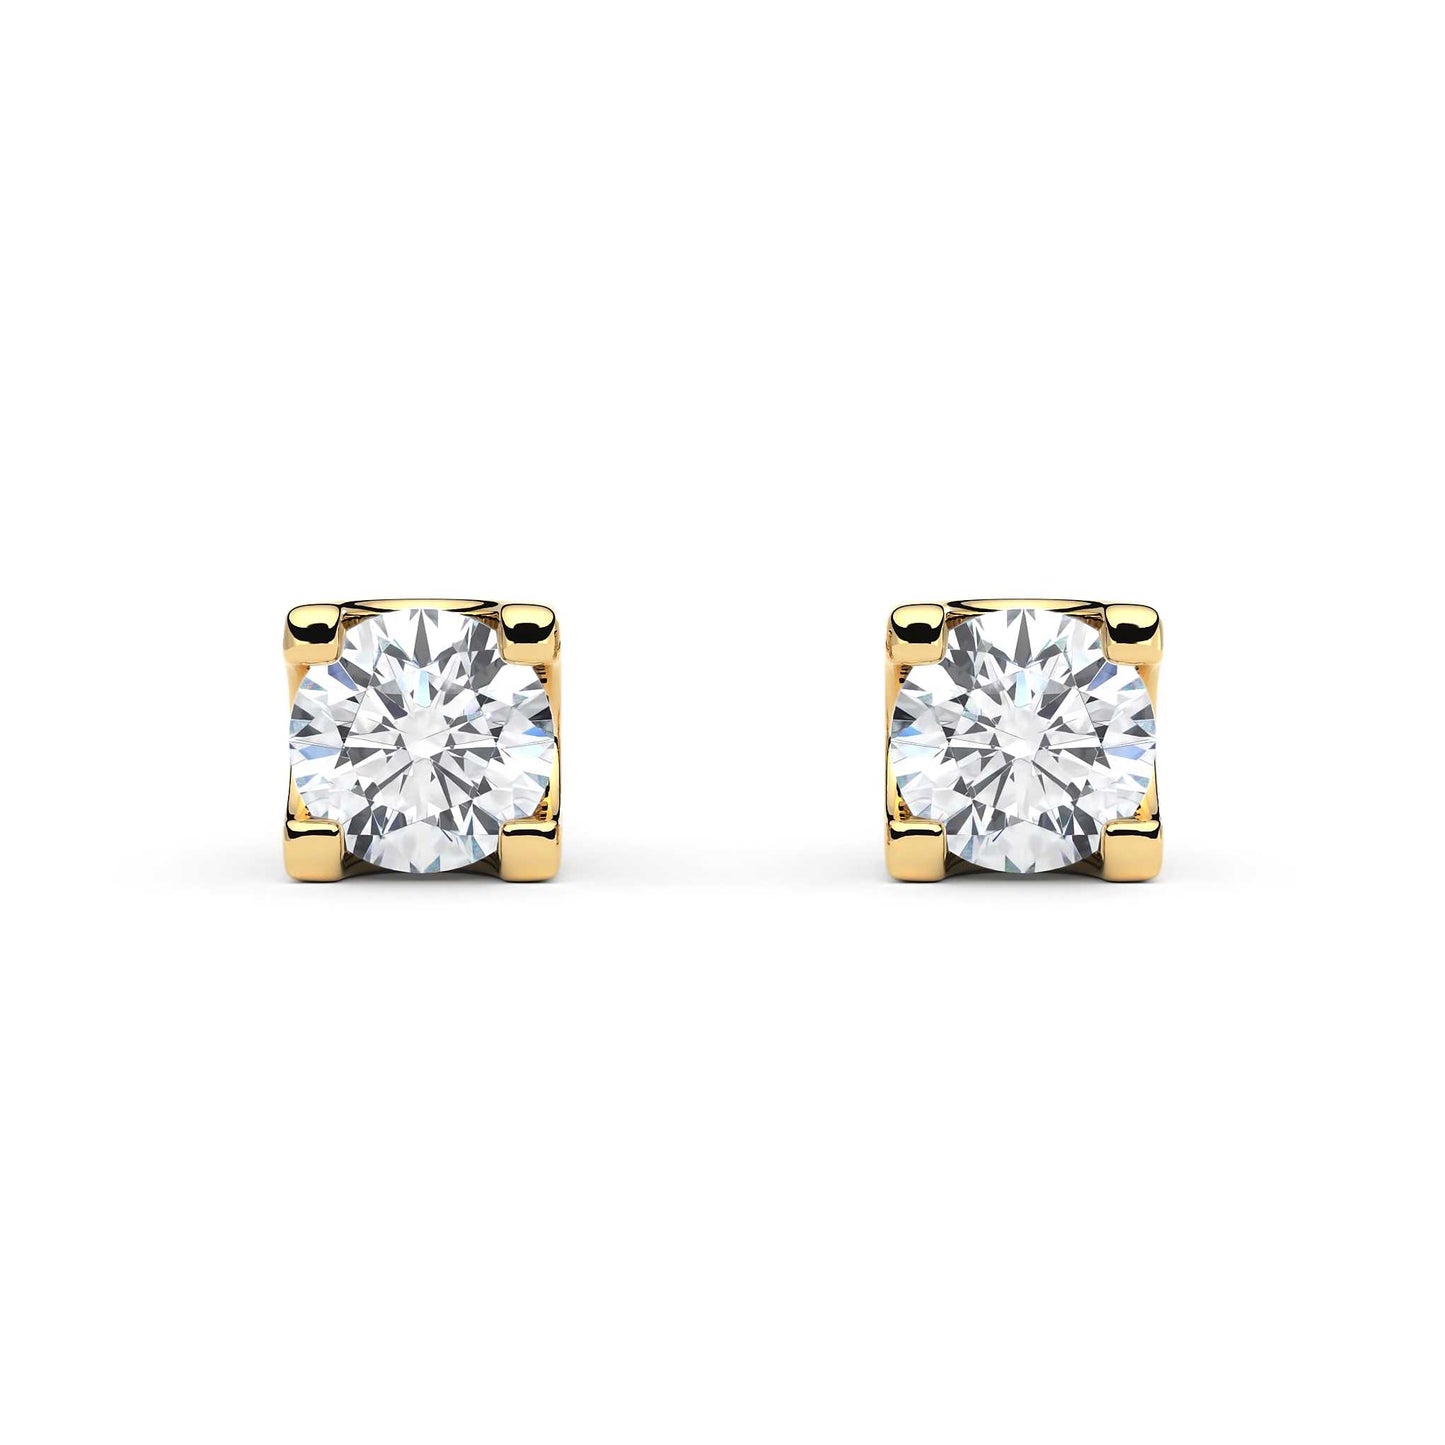 Suokko Timanttikorut -timanttikorvakorut keltakultaa, jossa istutettuna 2 timanttia. Tuotekoodi KE05621A2